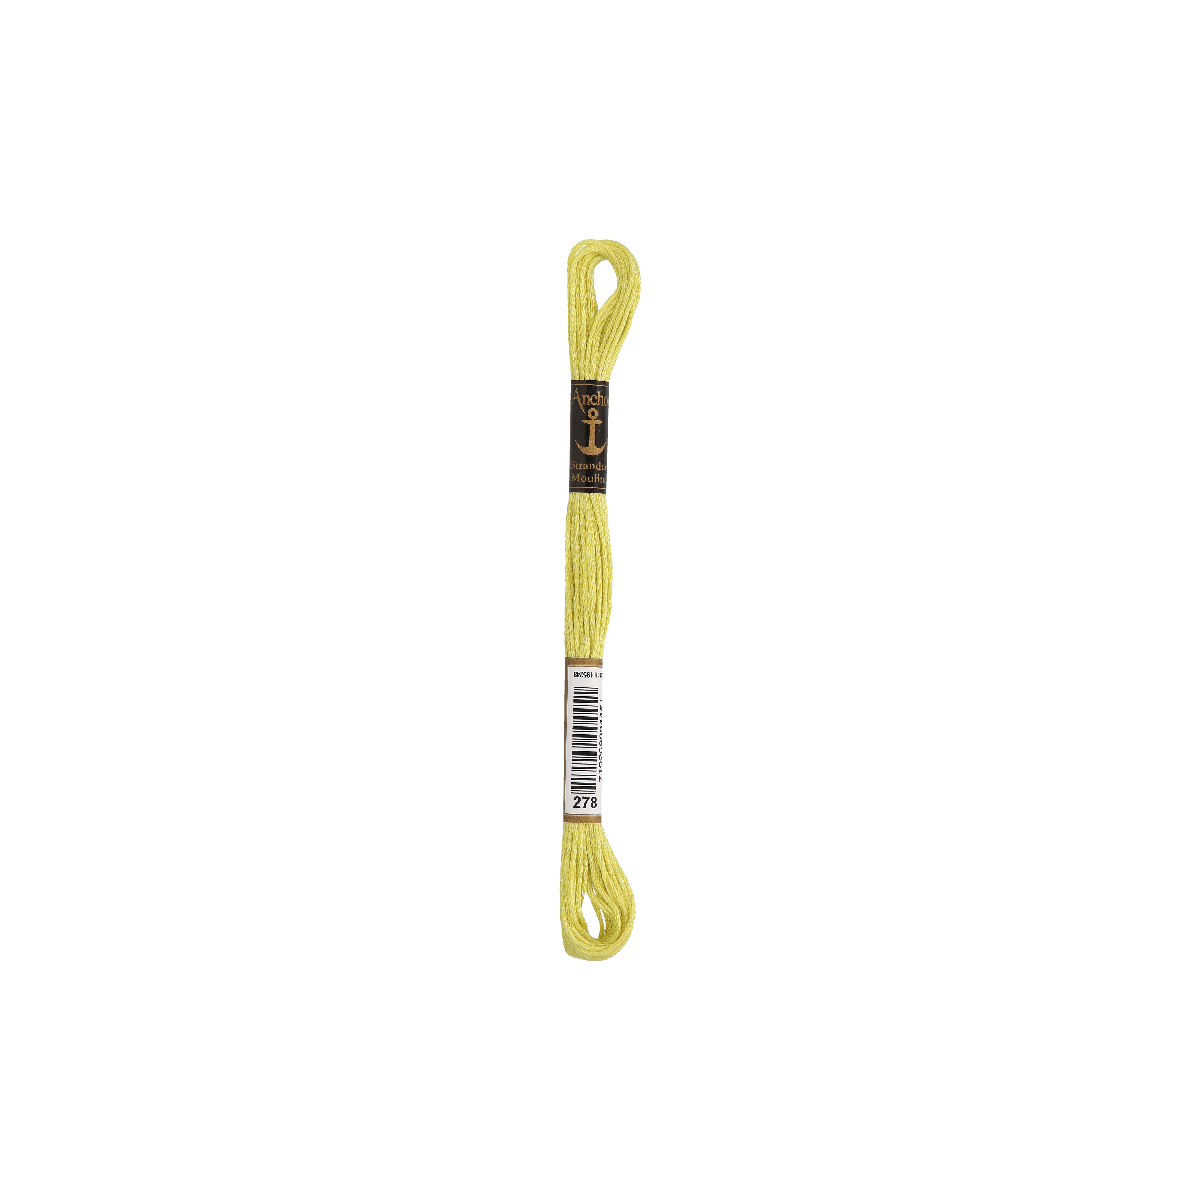 Anchor Sticktwist 8m, giallo-verde chiaro, cotone, colore...